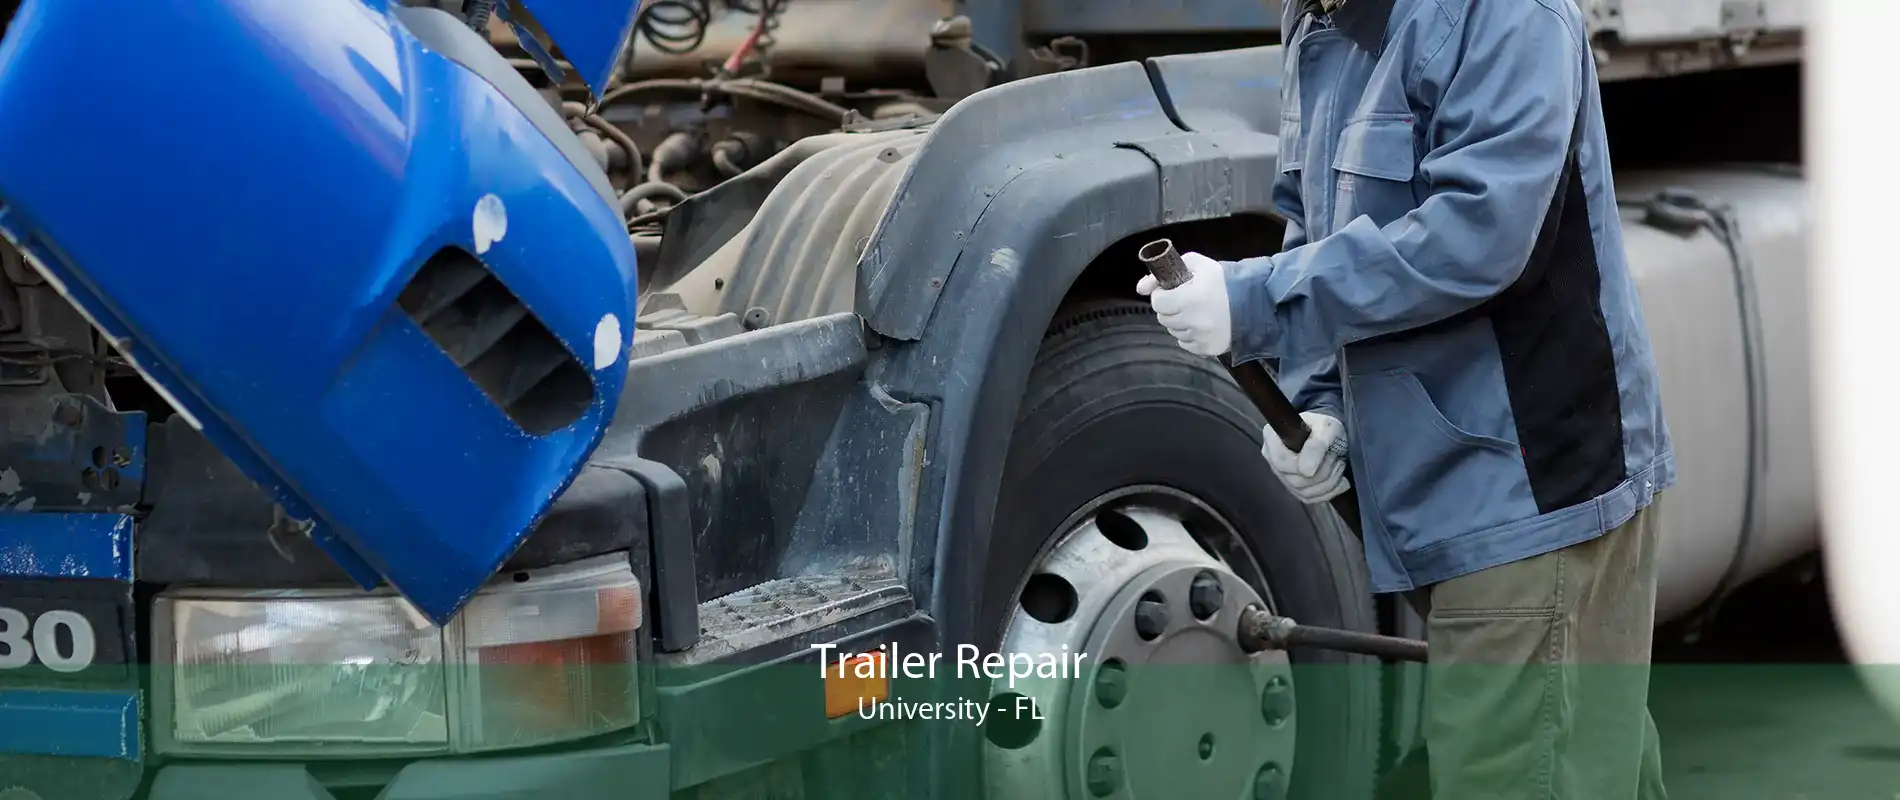 Trailer Repair University - FL